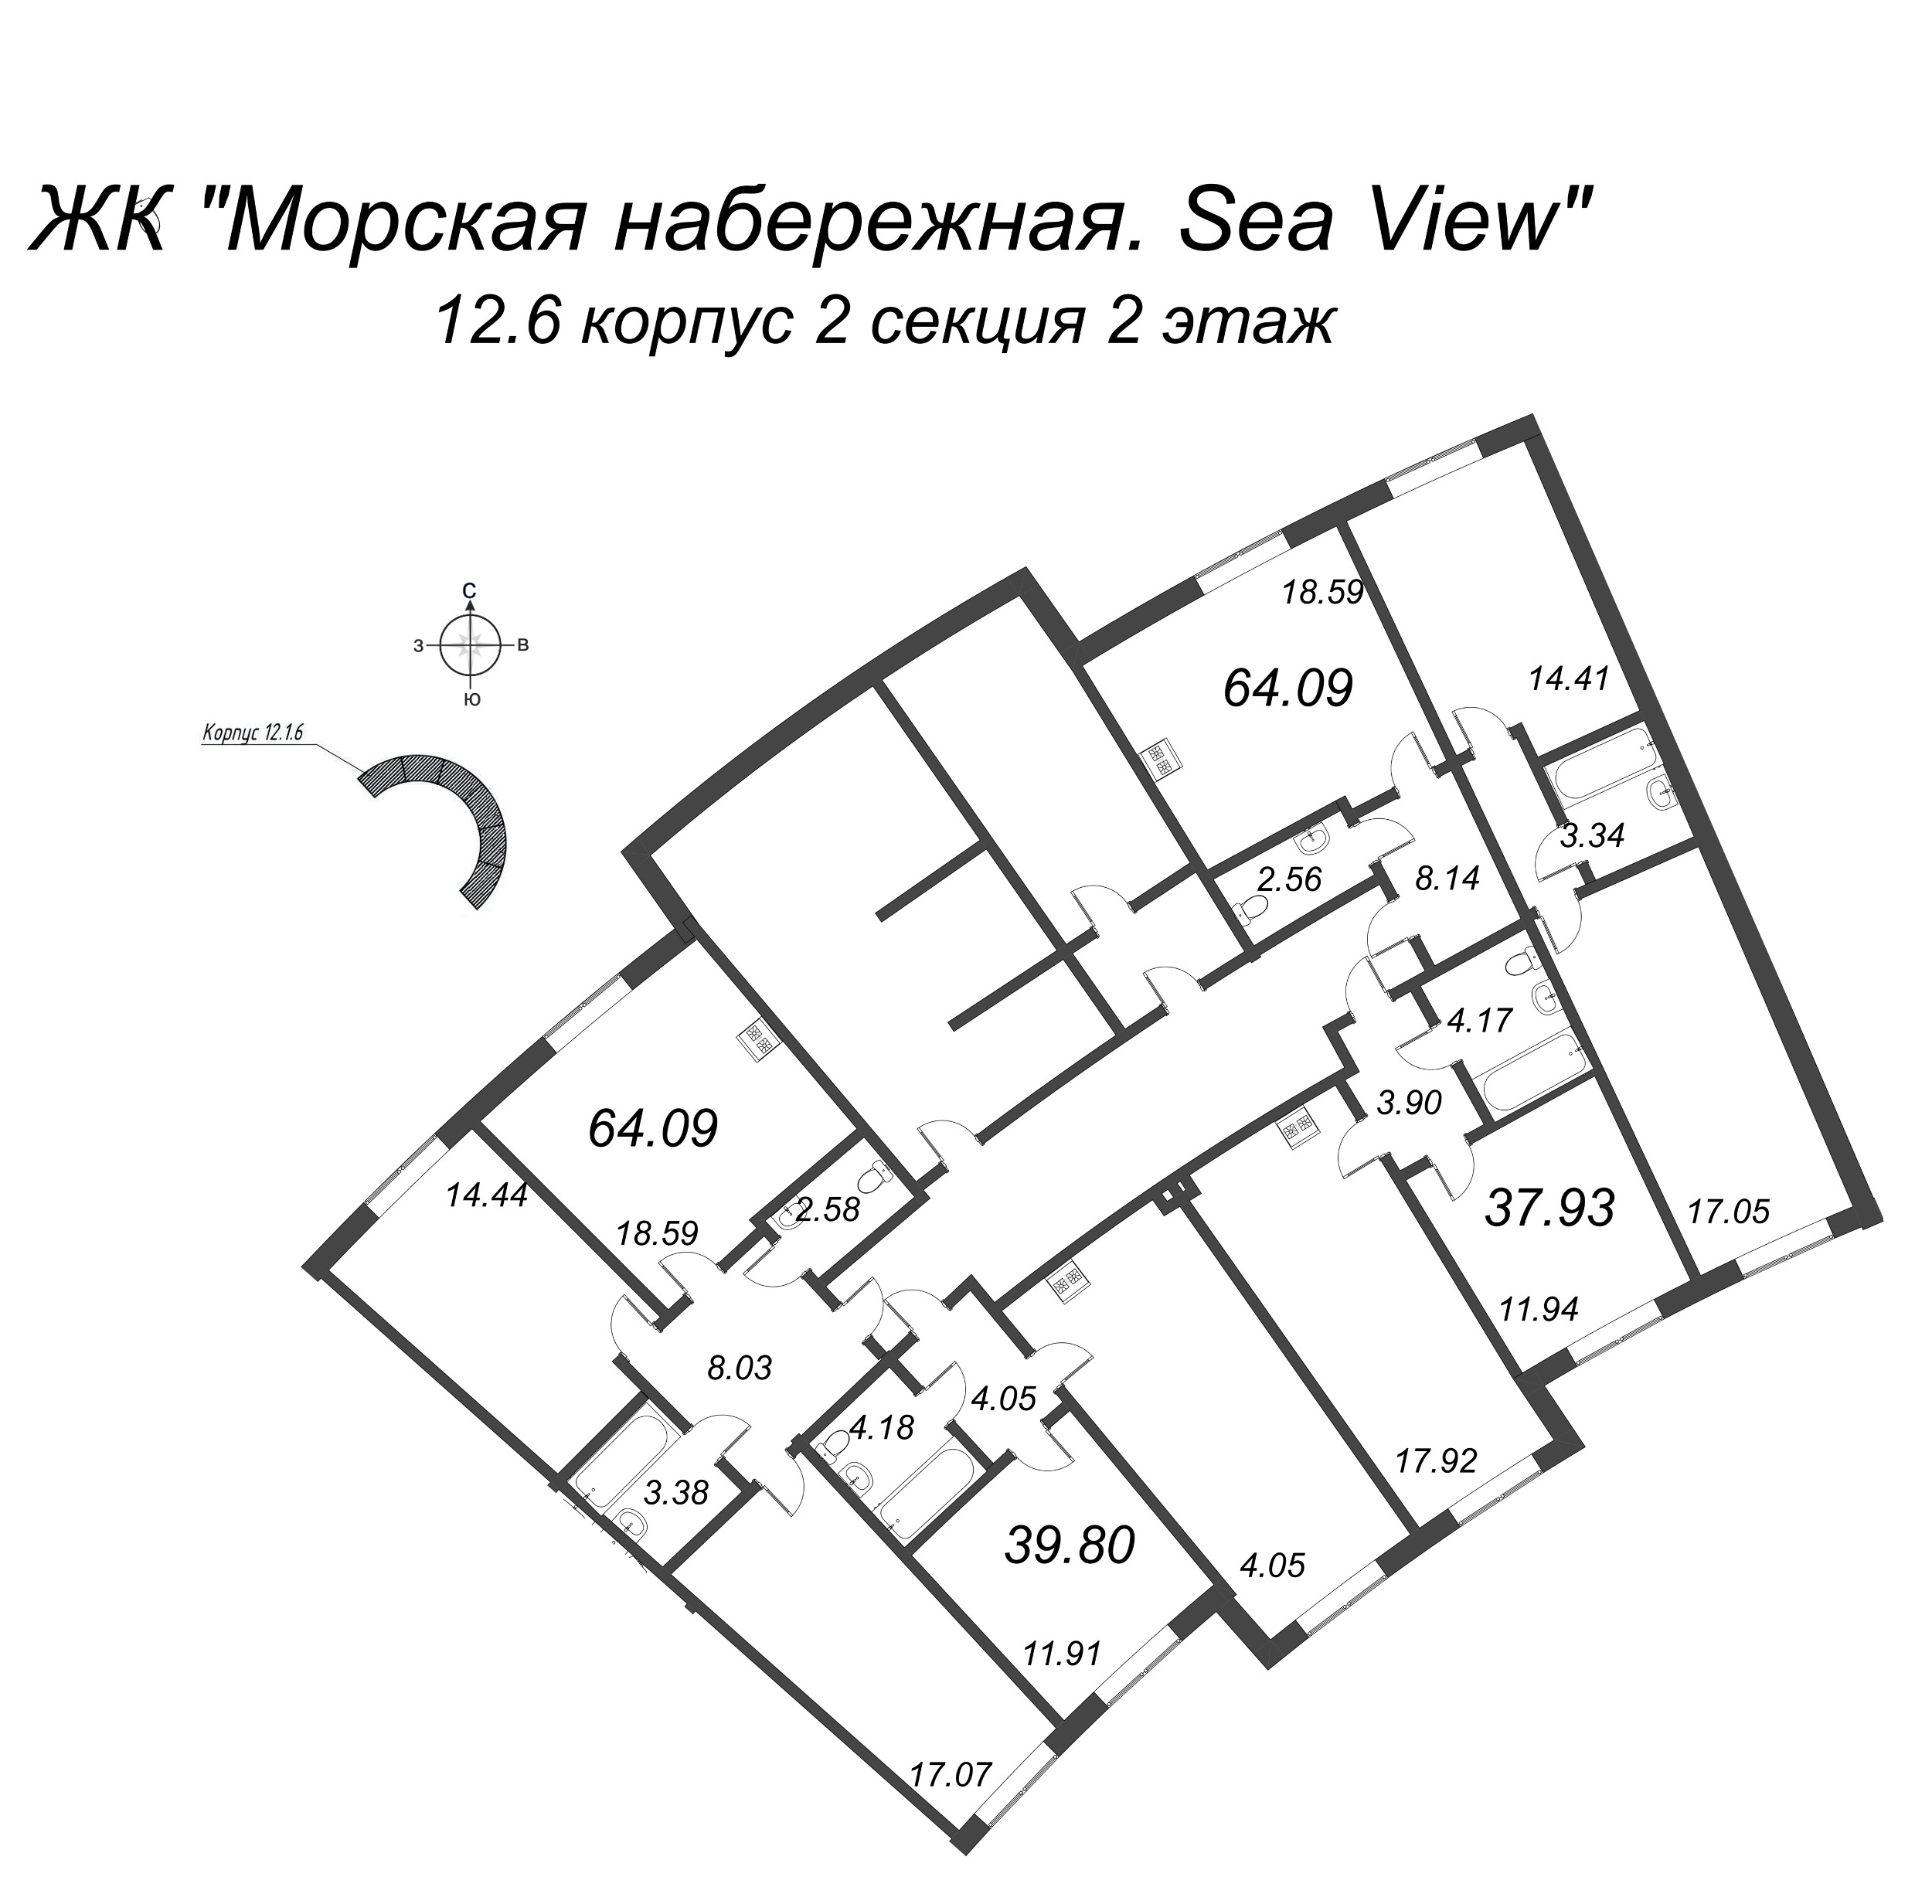 3-комнатная (Евро) квартира, 64.09 м² в ЖК "Морская набережная. SeaView" - планировка этажа